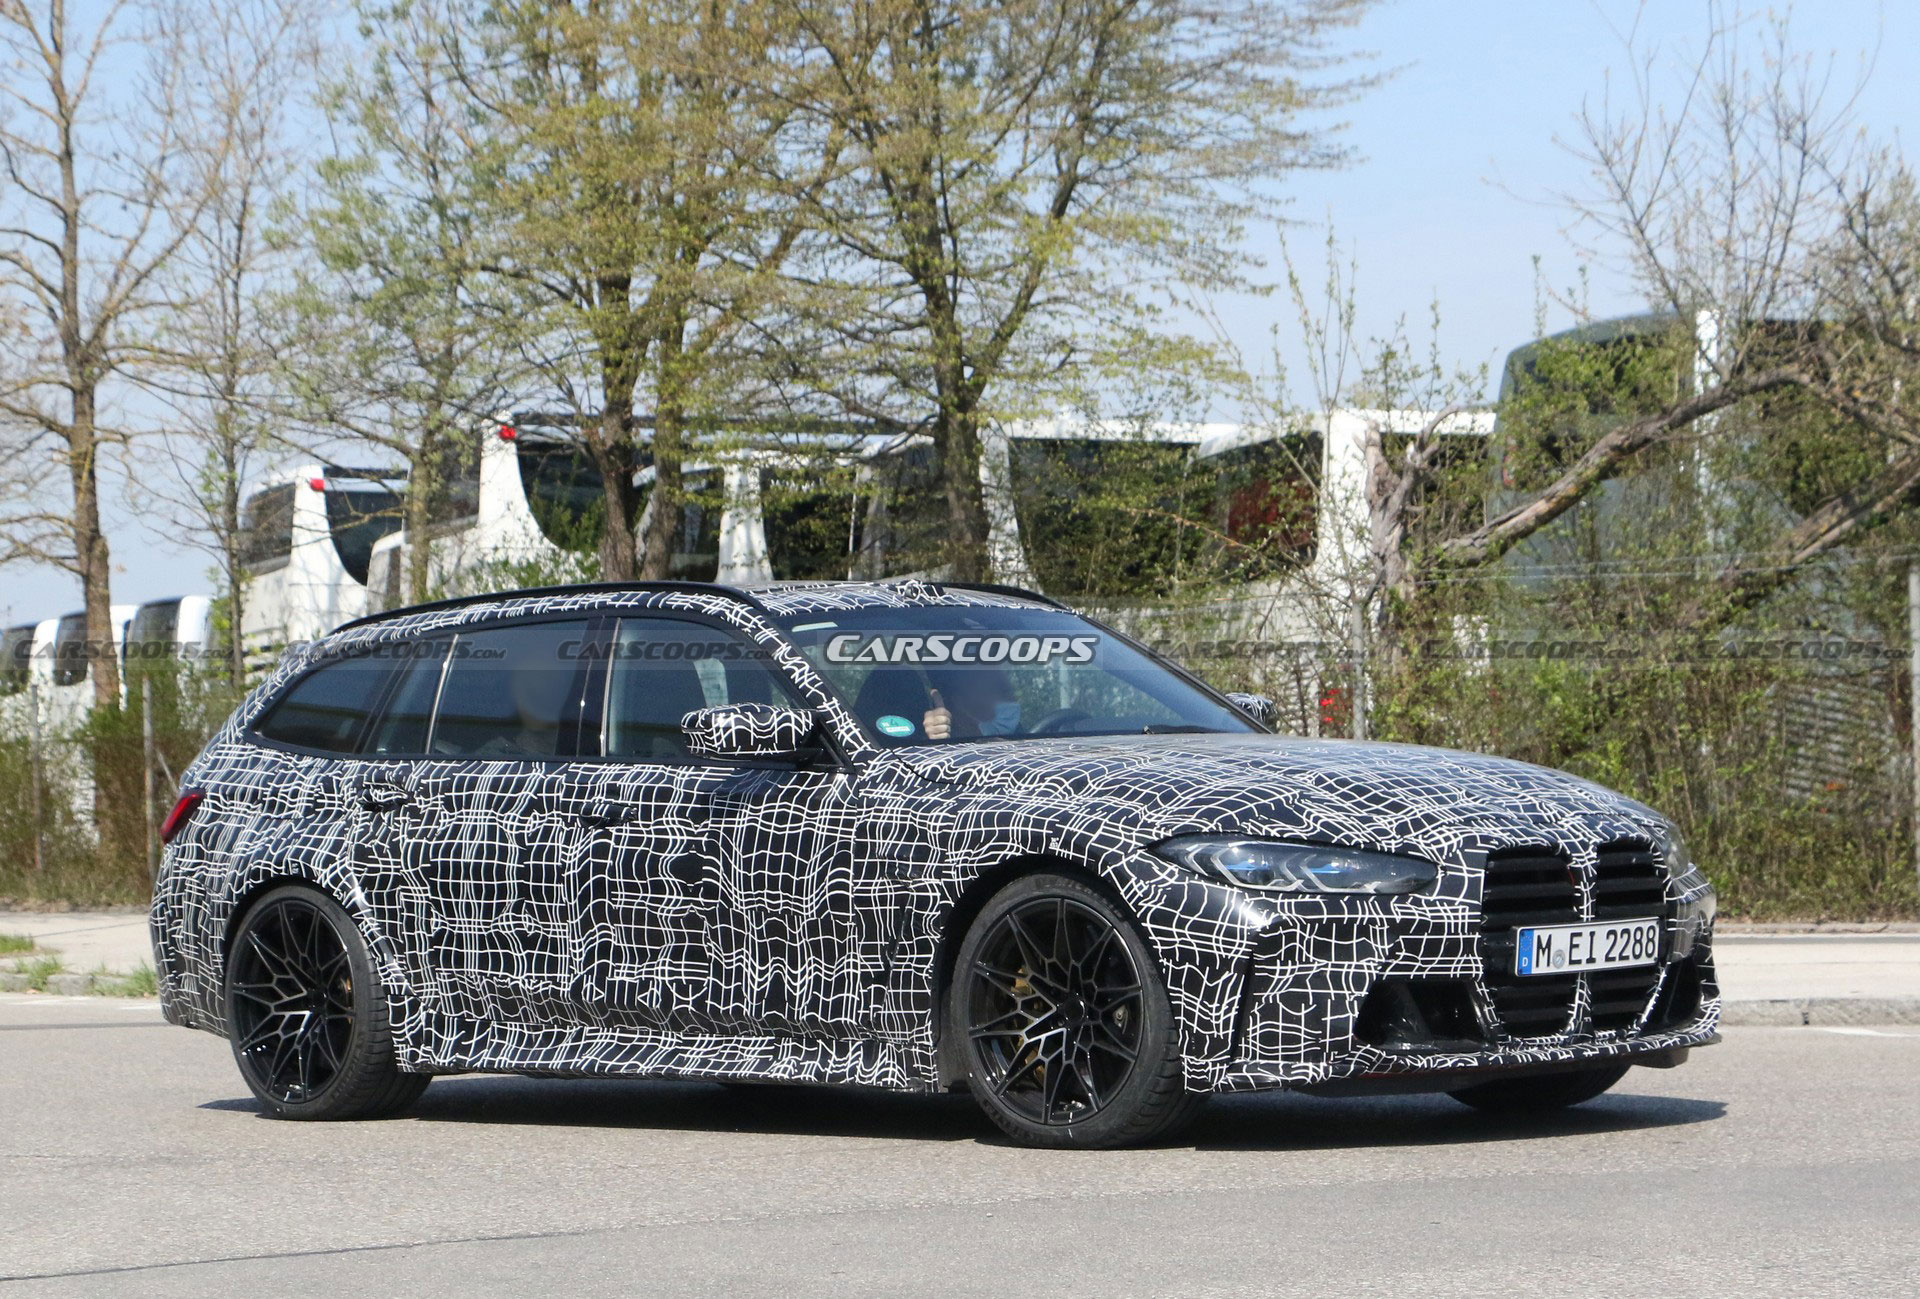 2022 BMW M3 Touring resim galerisi (27.05.2021)